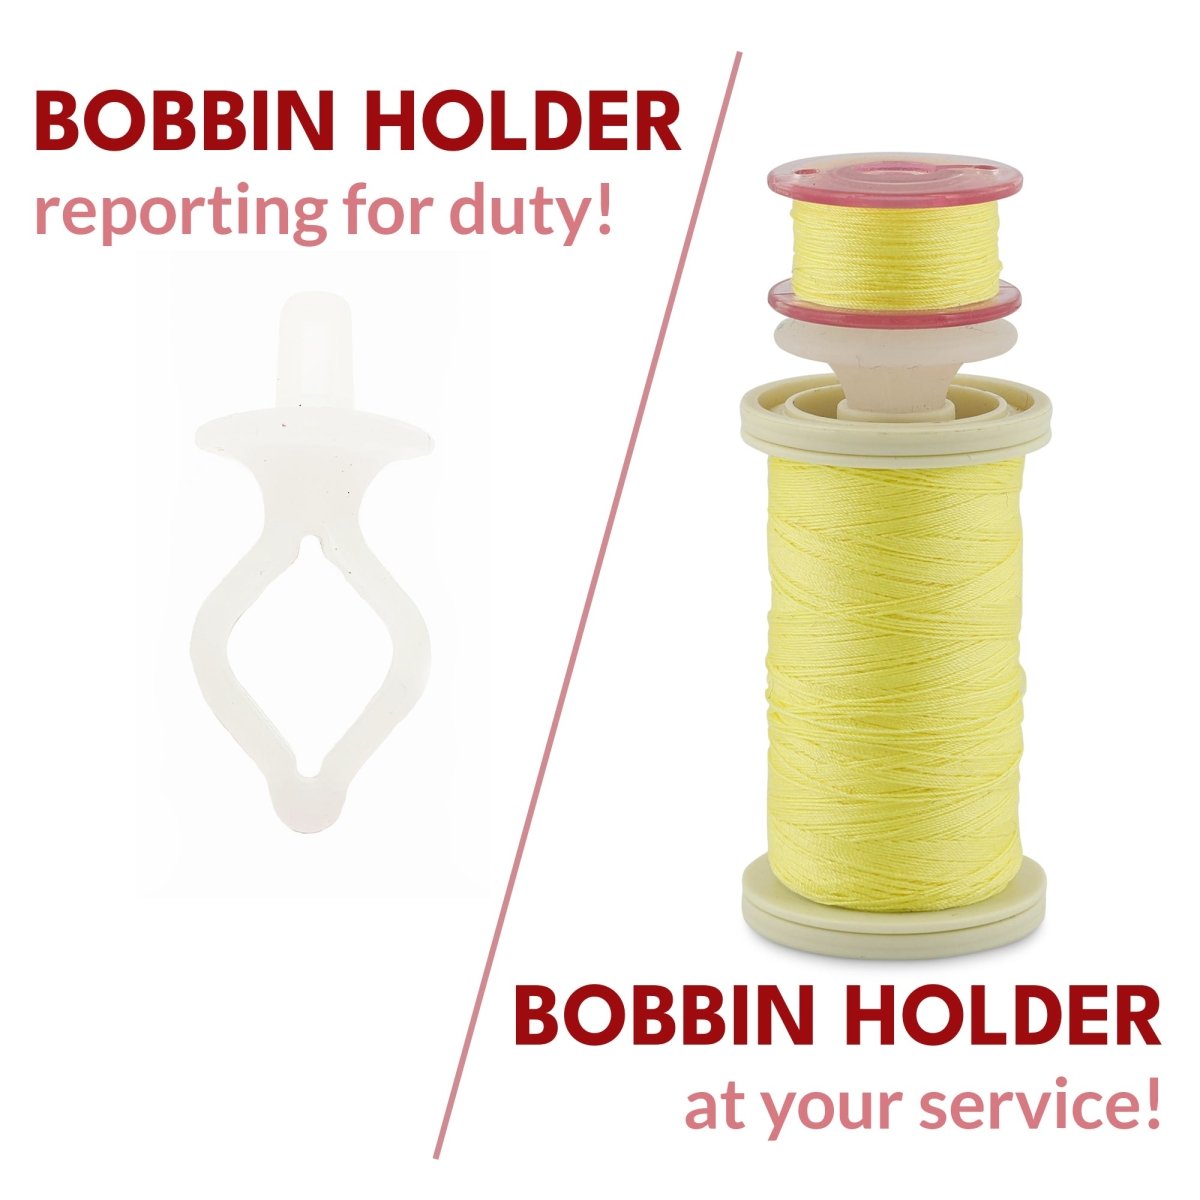 FUJI EZ Bobbin Holder Accessories & Tools buy at